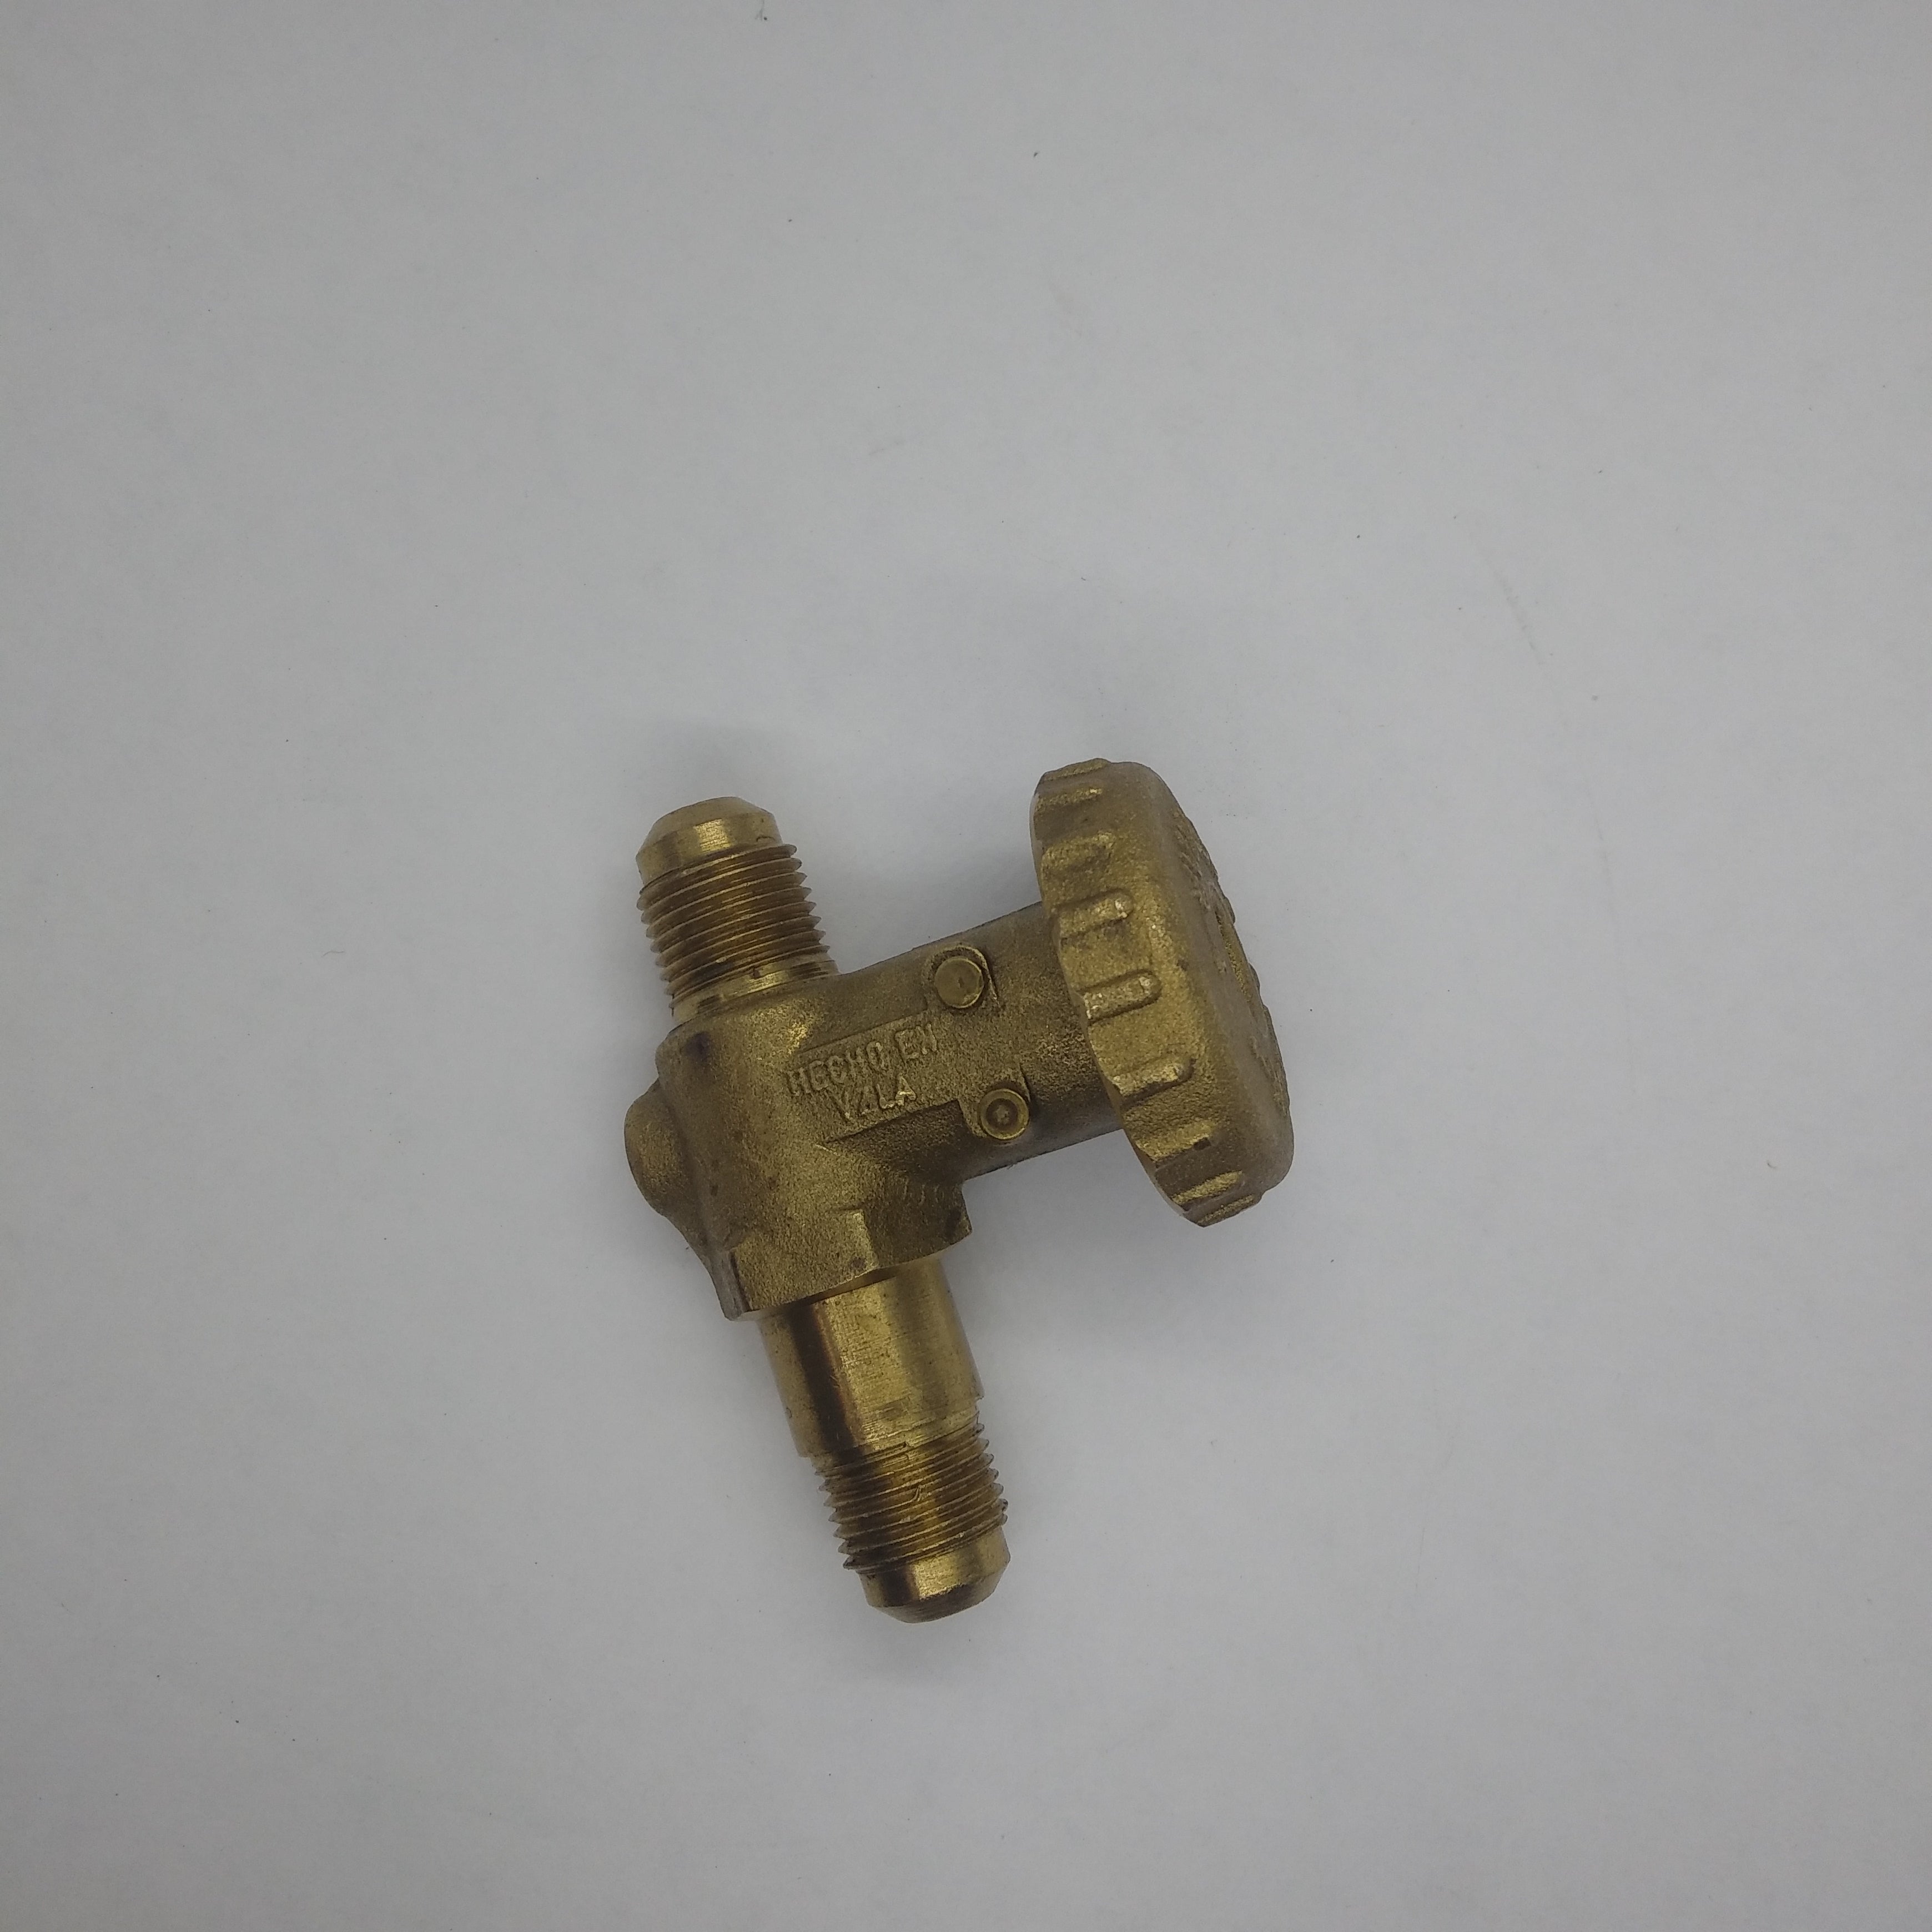 RMET153  Gas valve 3/8" / Valvula de paso 3/8"  X 3/8 "  #VAL-006